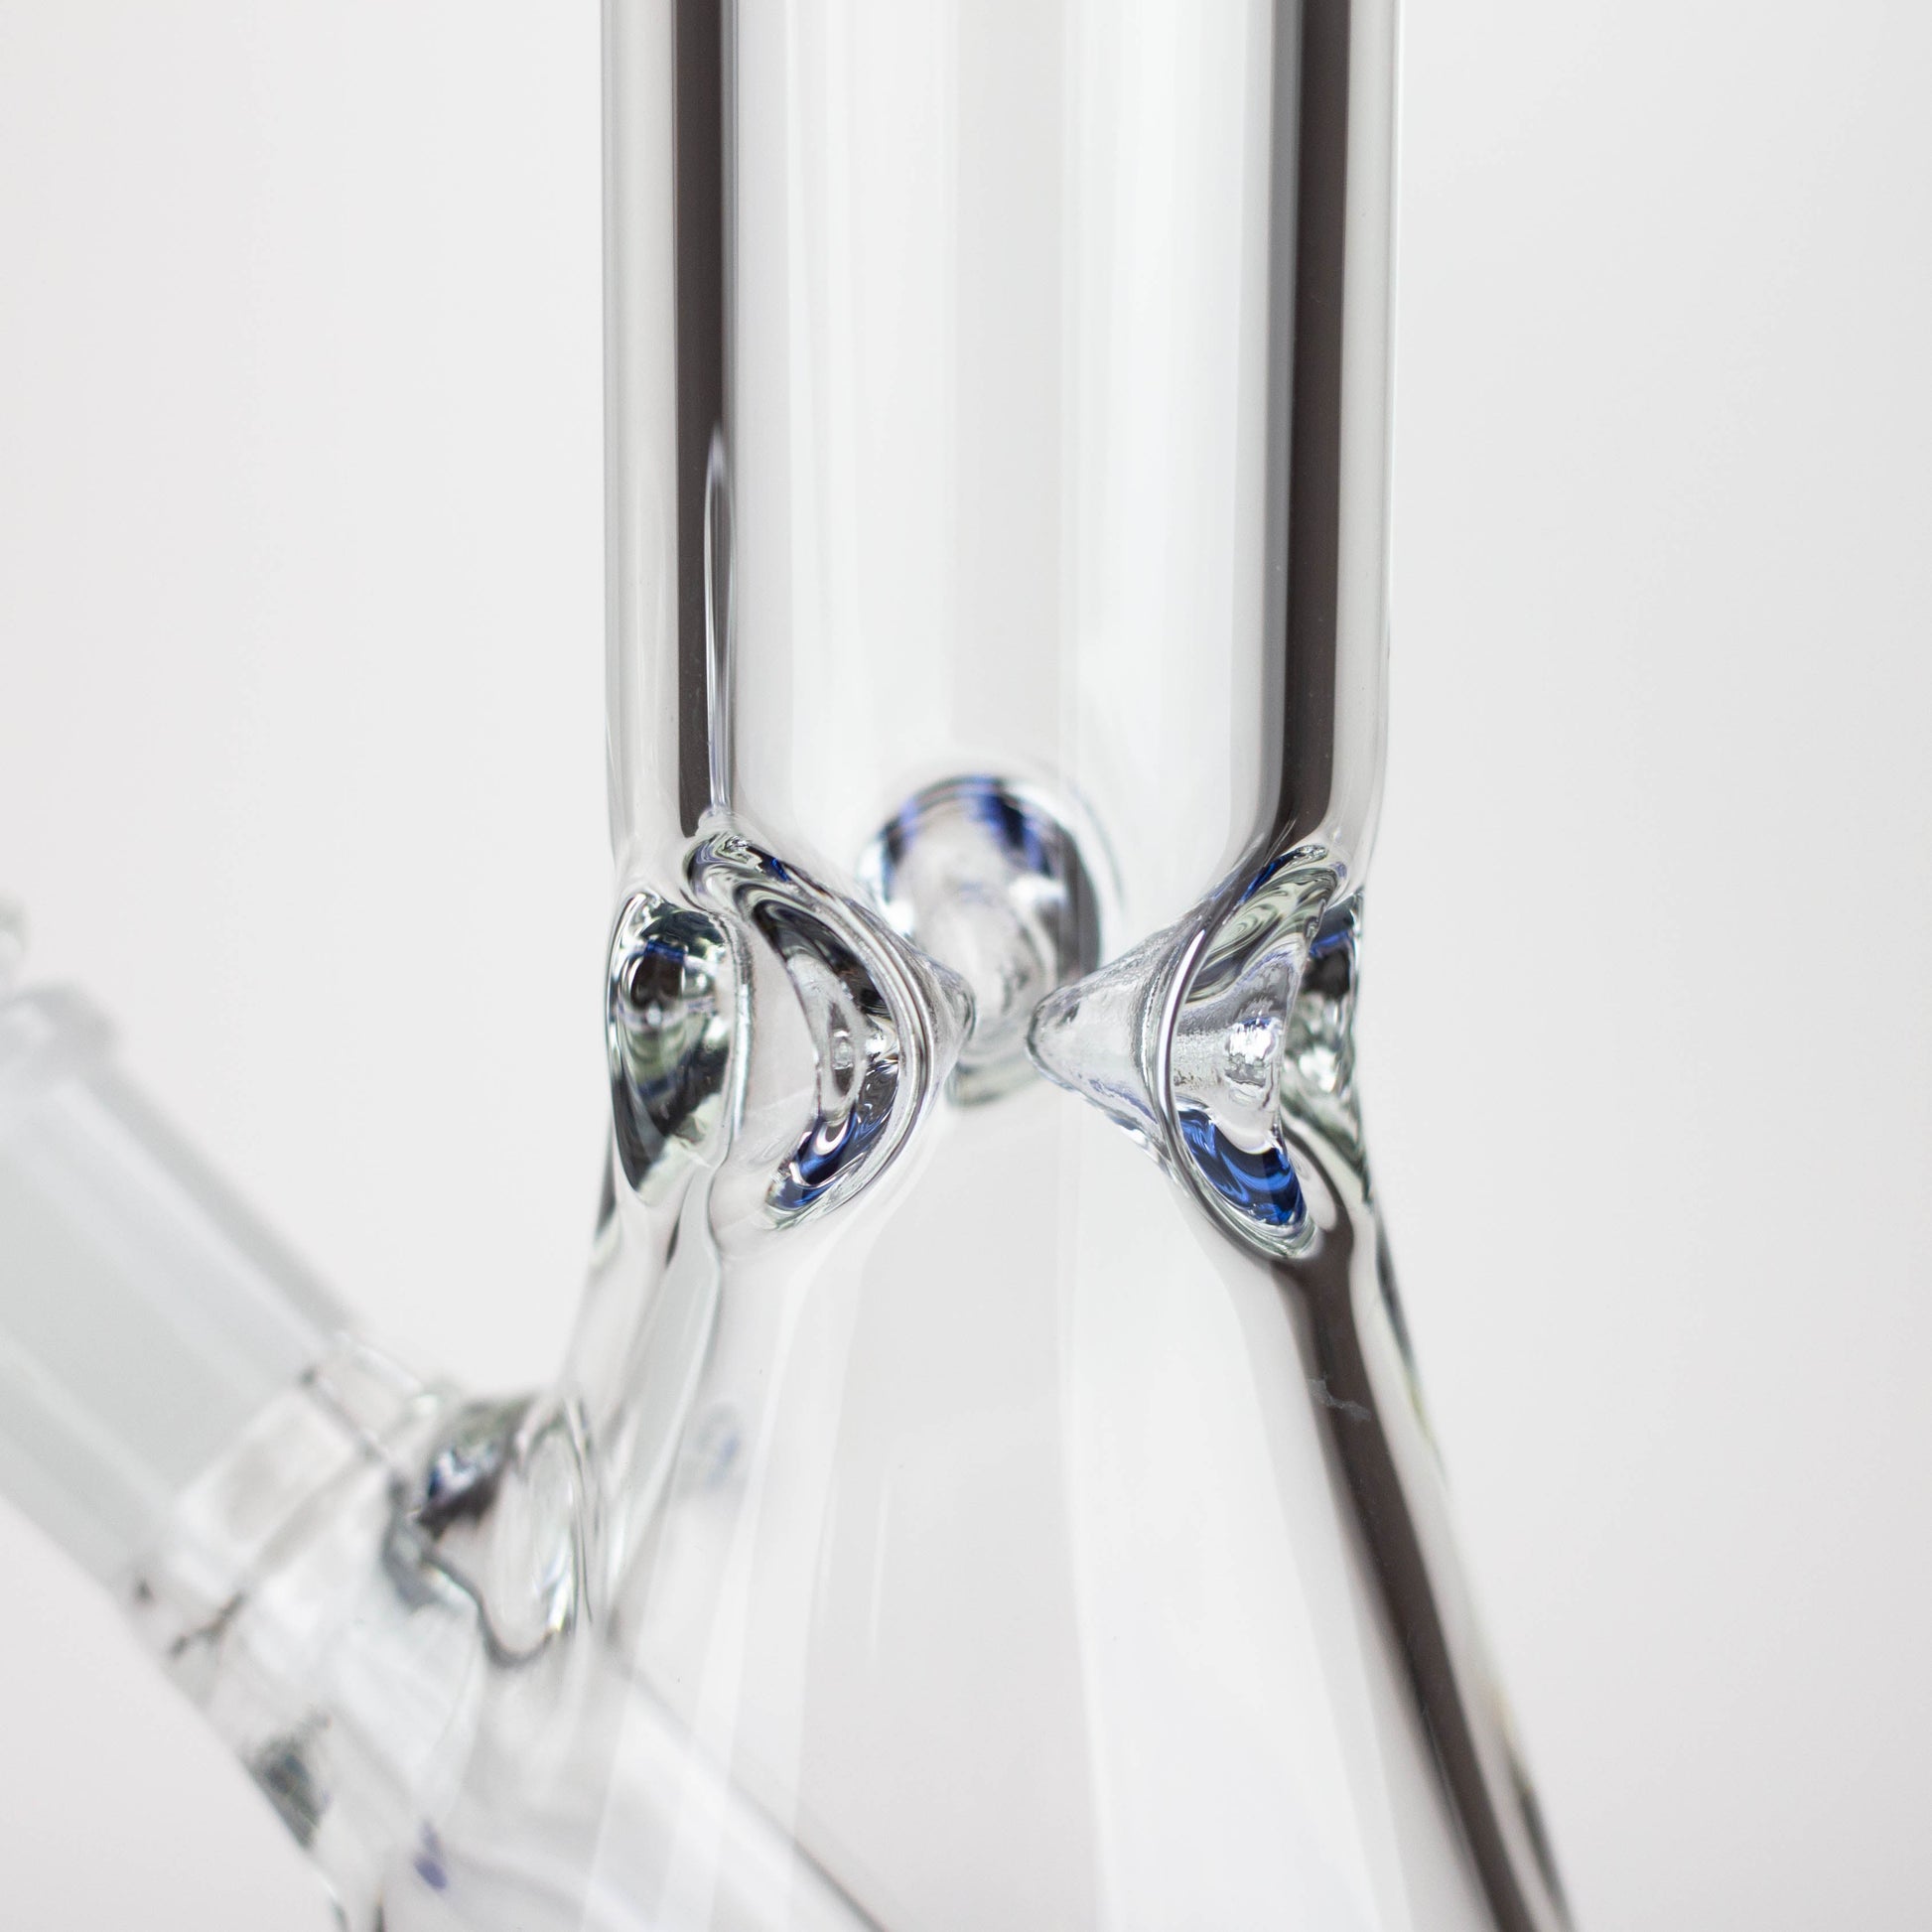 10" Beaker glass water bong [G31034]_9